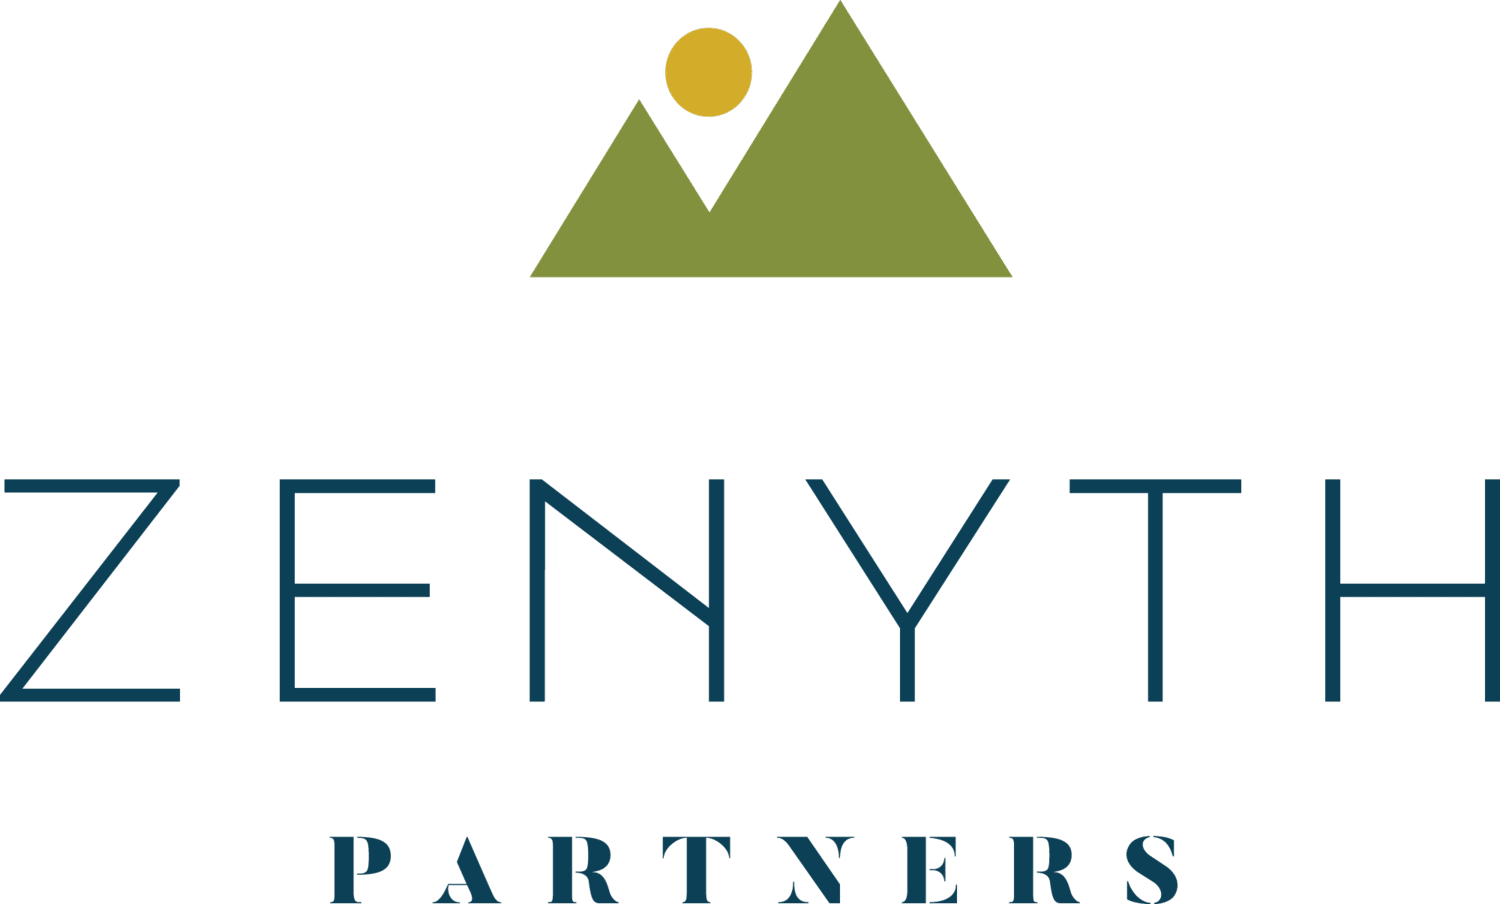 Zenyth Partners